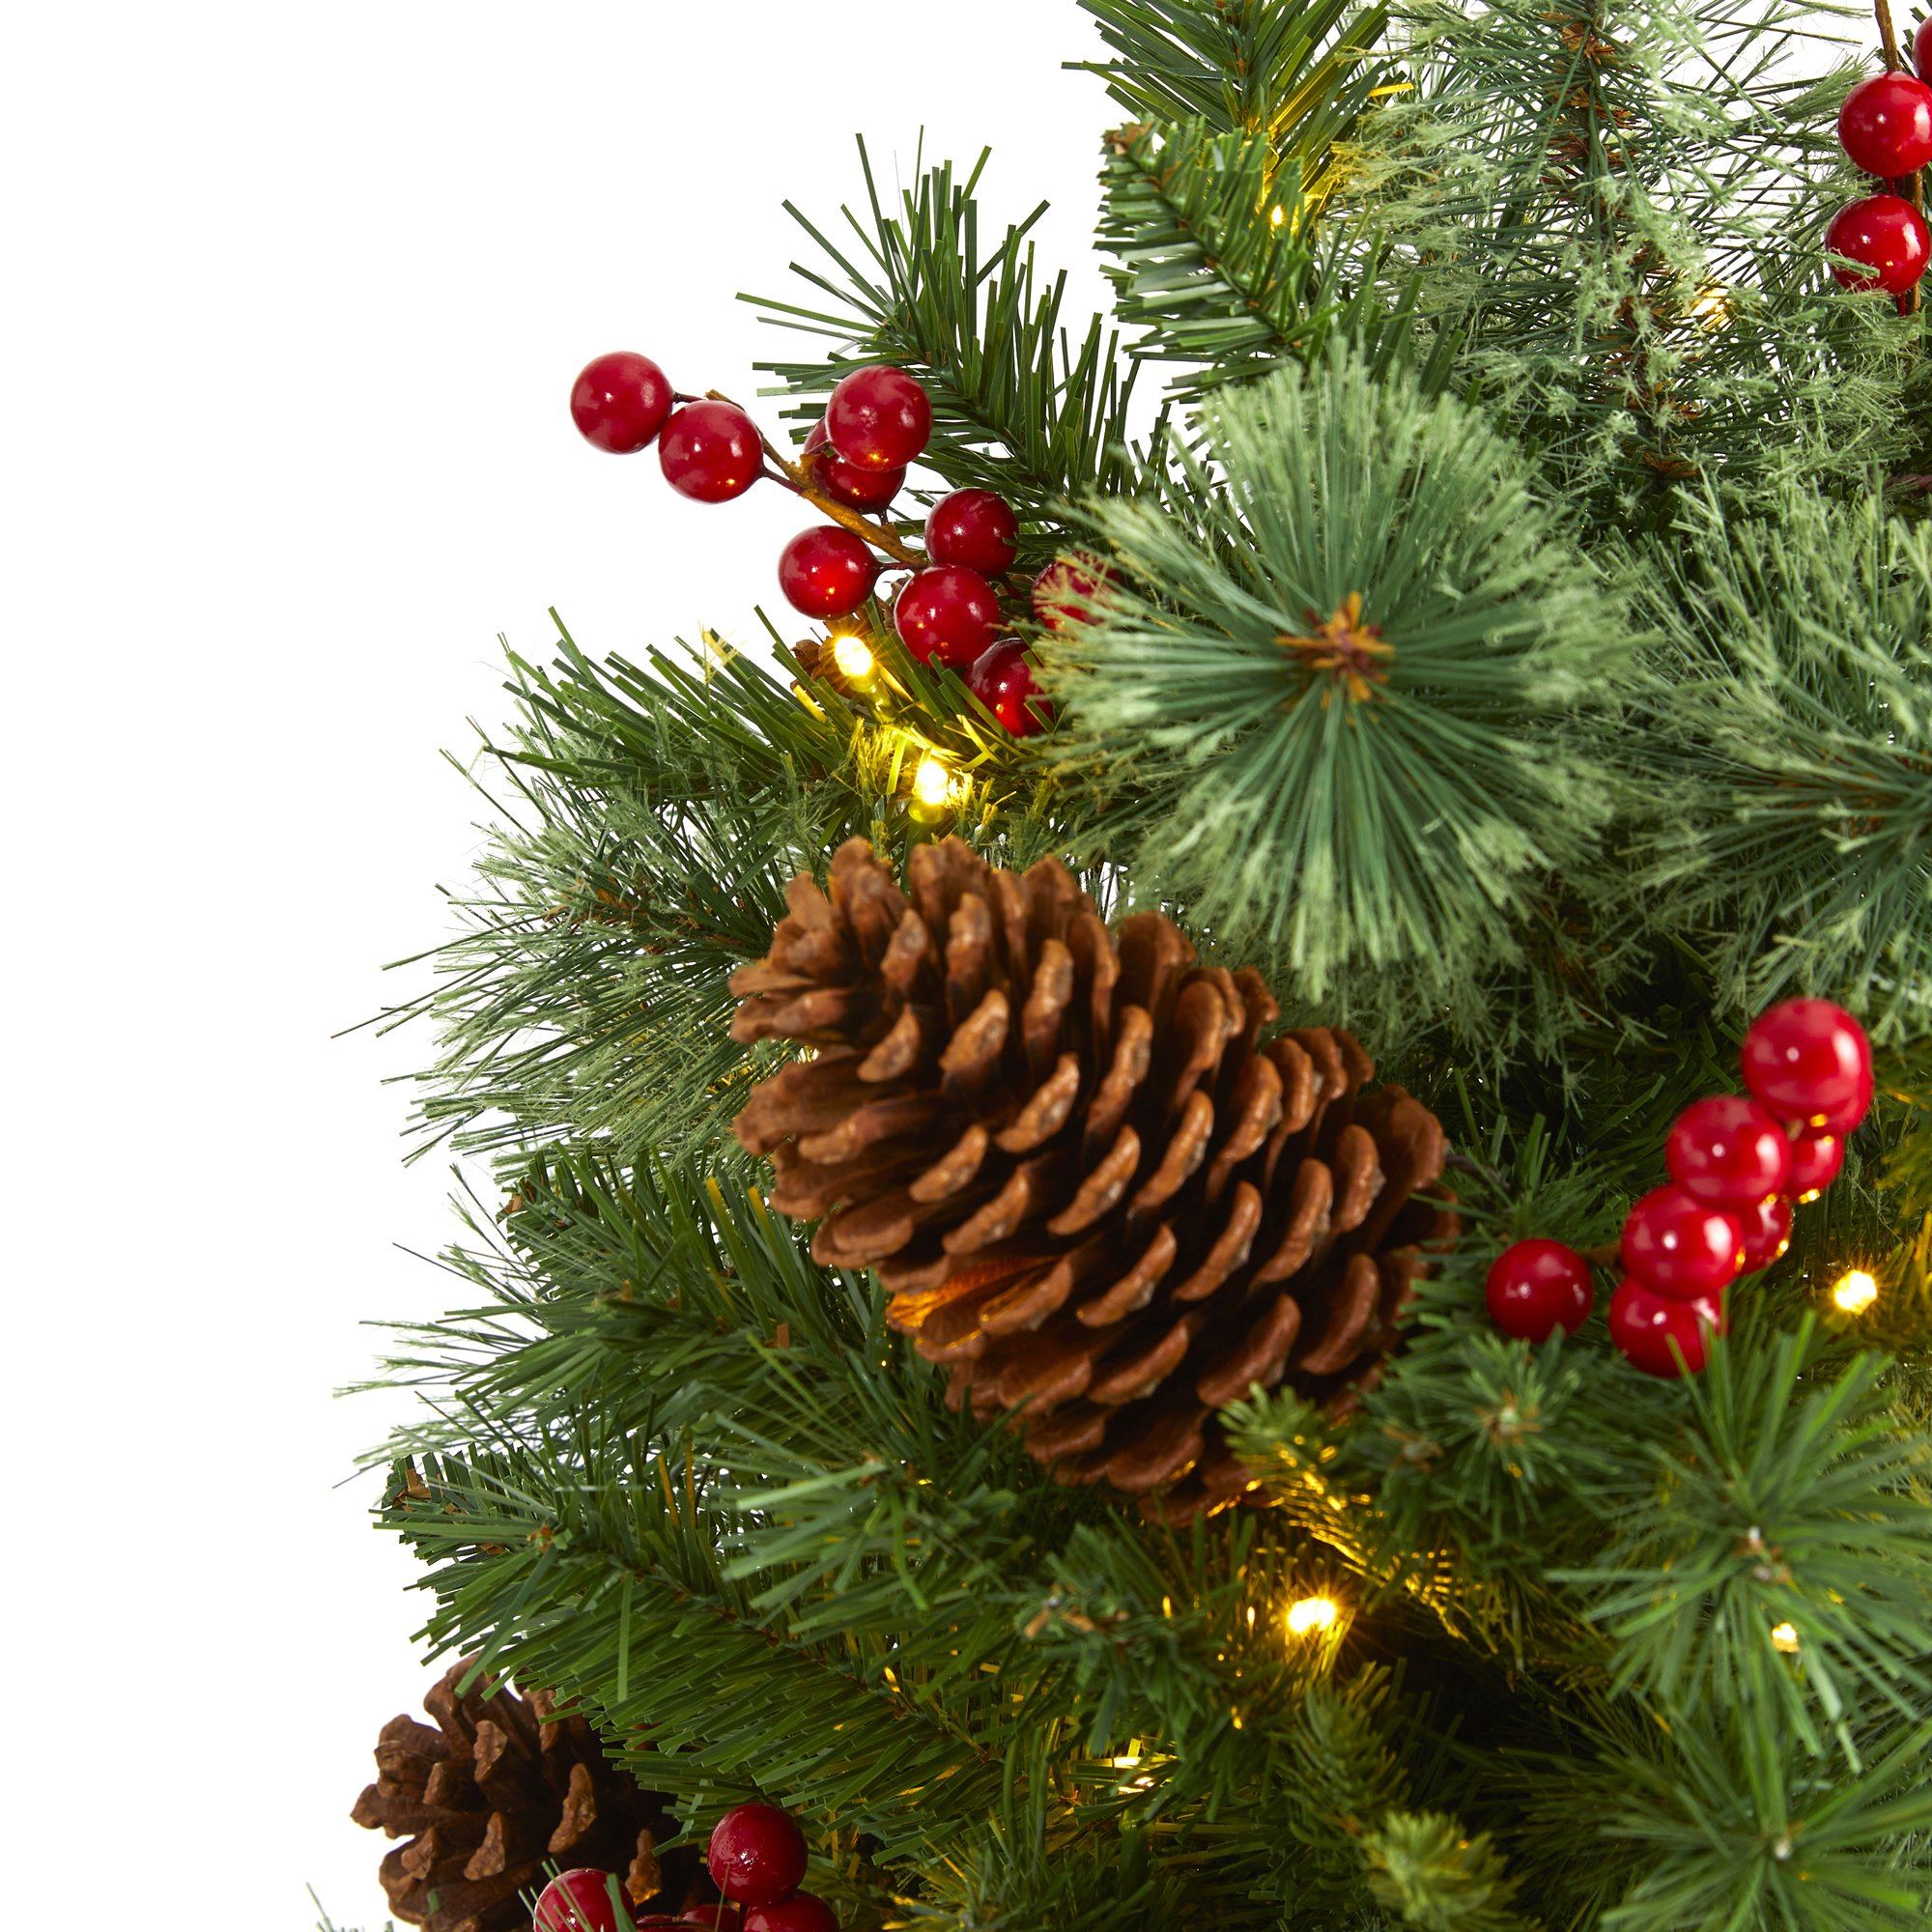 4â Norway Mixed Pine Artificial Christmas Tree with 150 Clear LED Lights, Pine Cones and Berries 